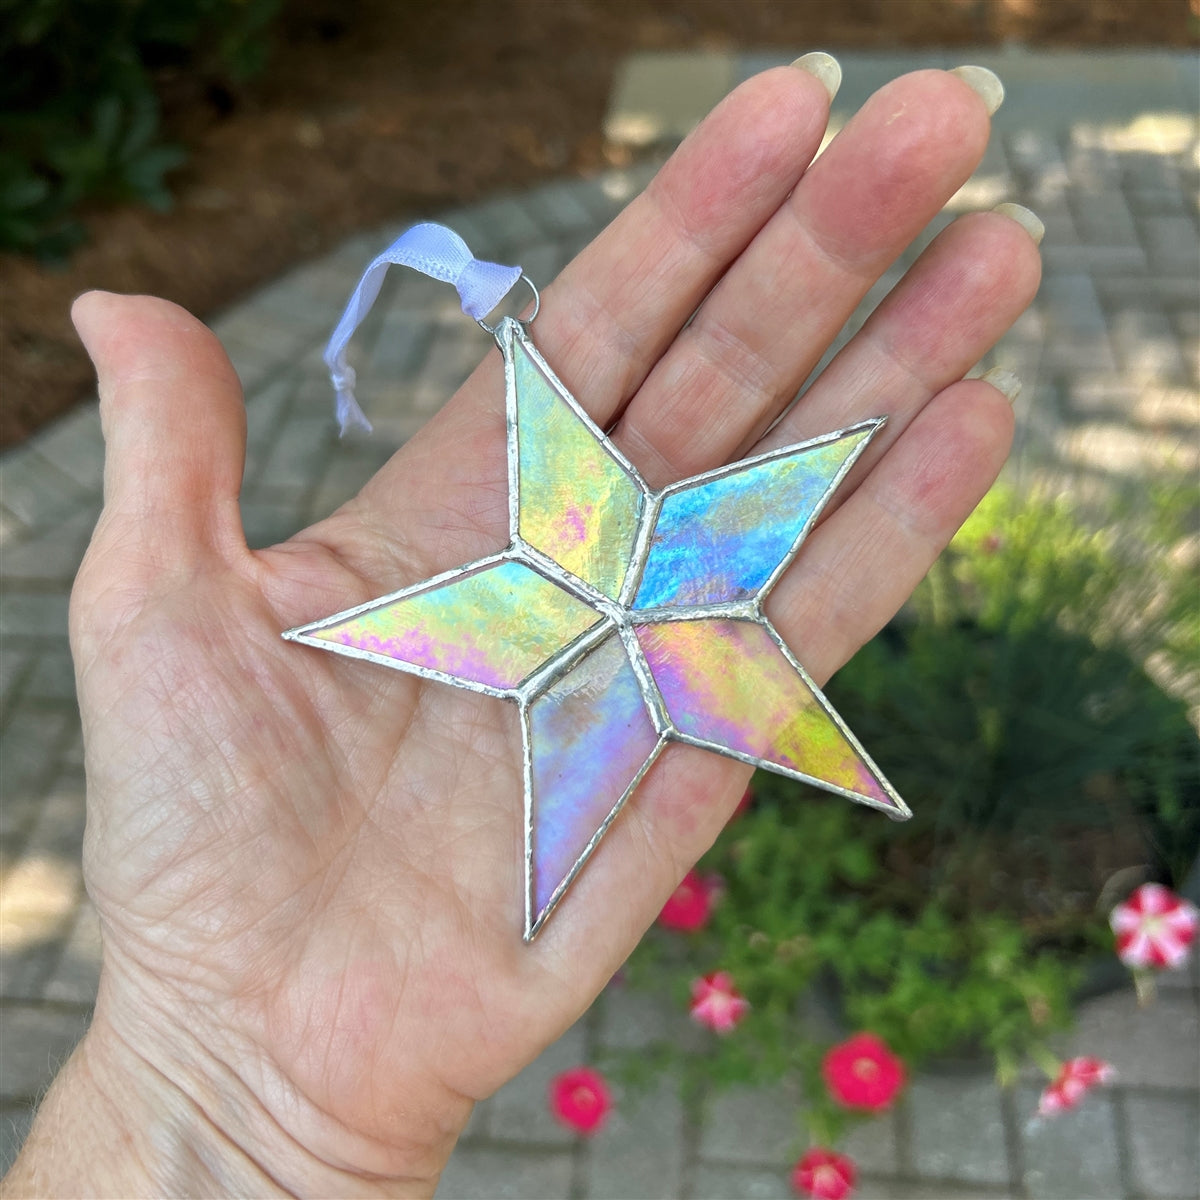 Sleeping Star Infant Memorial Handmade  Glass Star